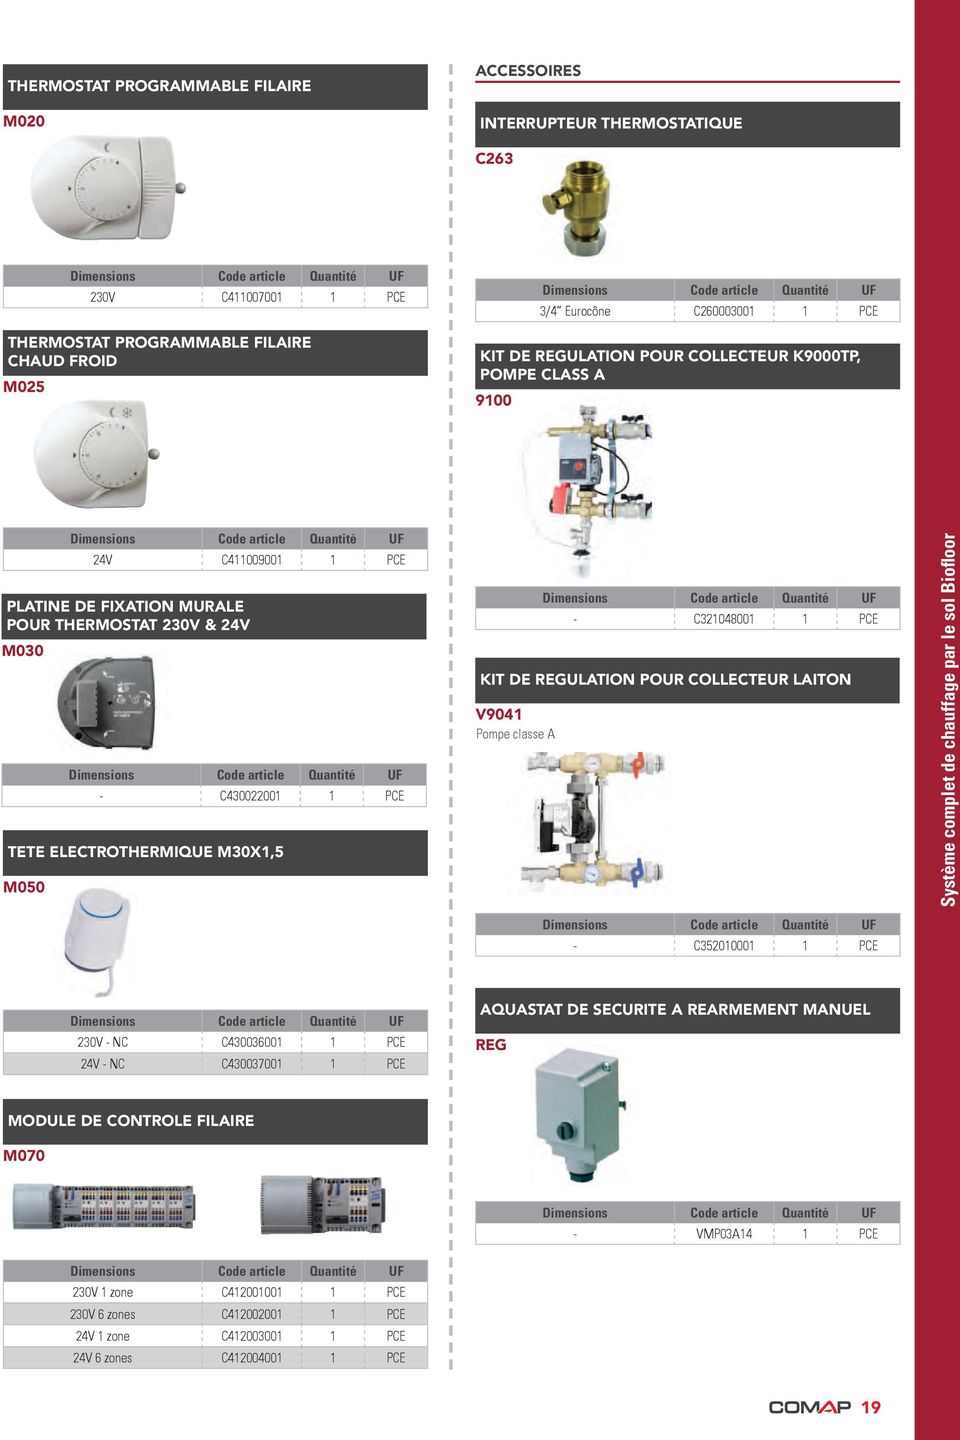 C321048001 1 Kit de regulation pour collecteur laiton V9041 Pompe classe A Système complet de chauffage par le sol Biofloor - C352010001 1 230V - NC C430036001 1 24V - NC C430037001 1